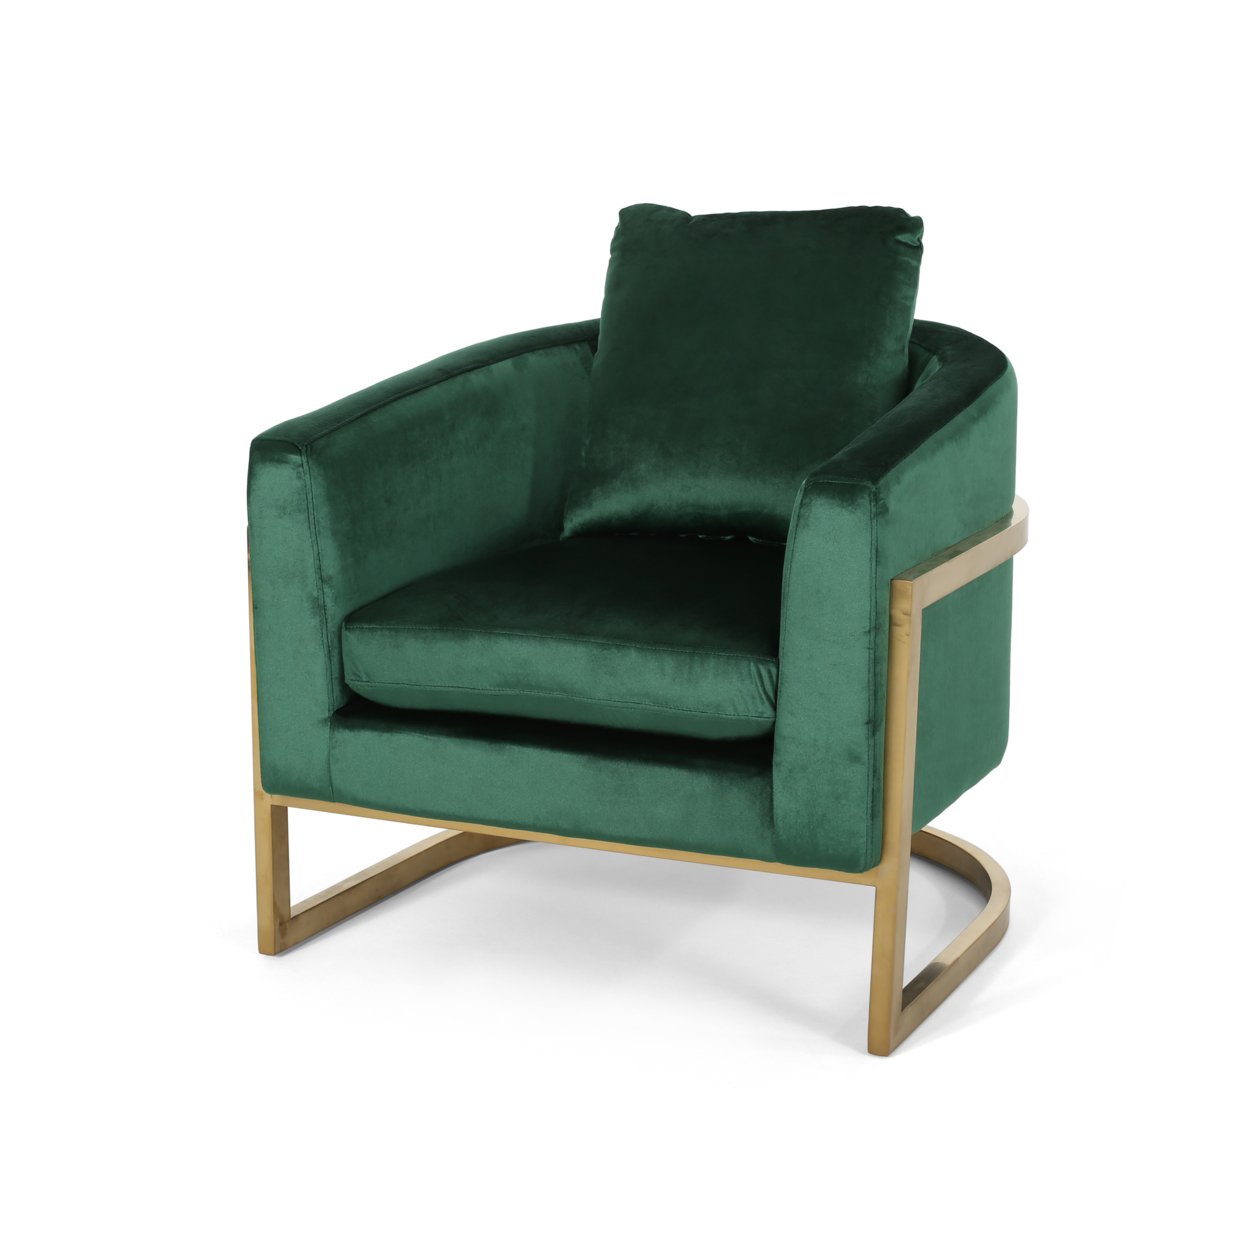 Chloe Modern Velvet Glam Armchair With Stainless Steel Frame - Emerald + Gold